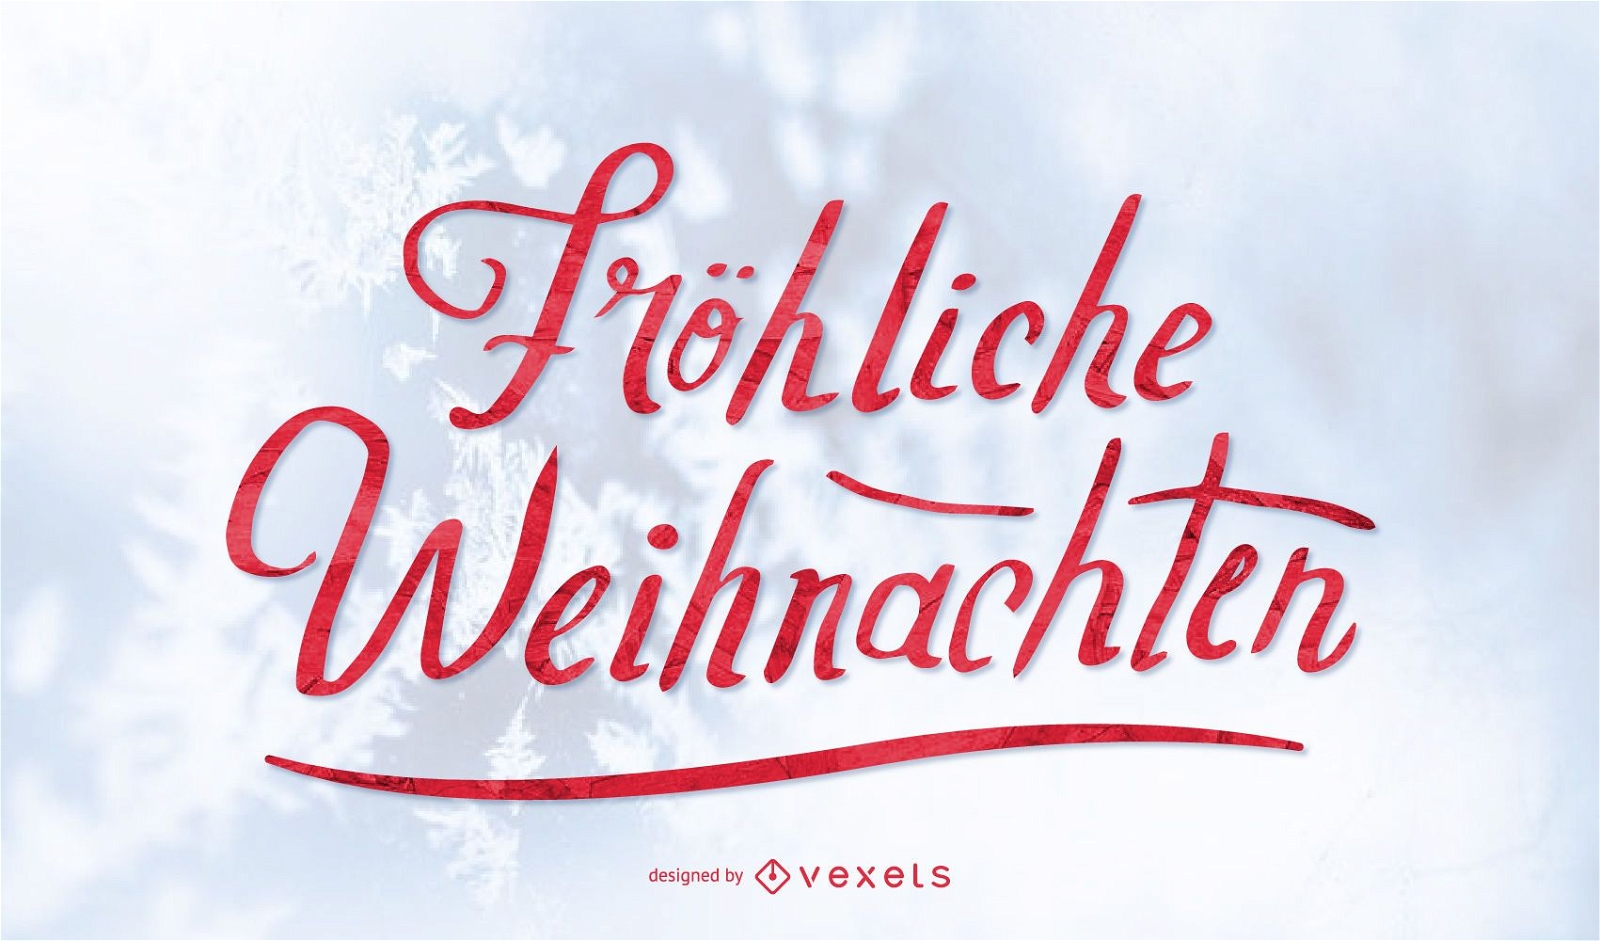 Fröhliche Weihnachten Christmas lettering